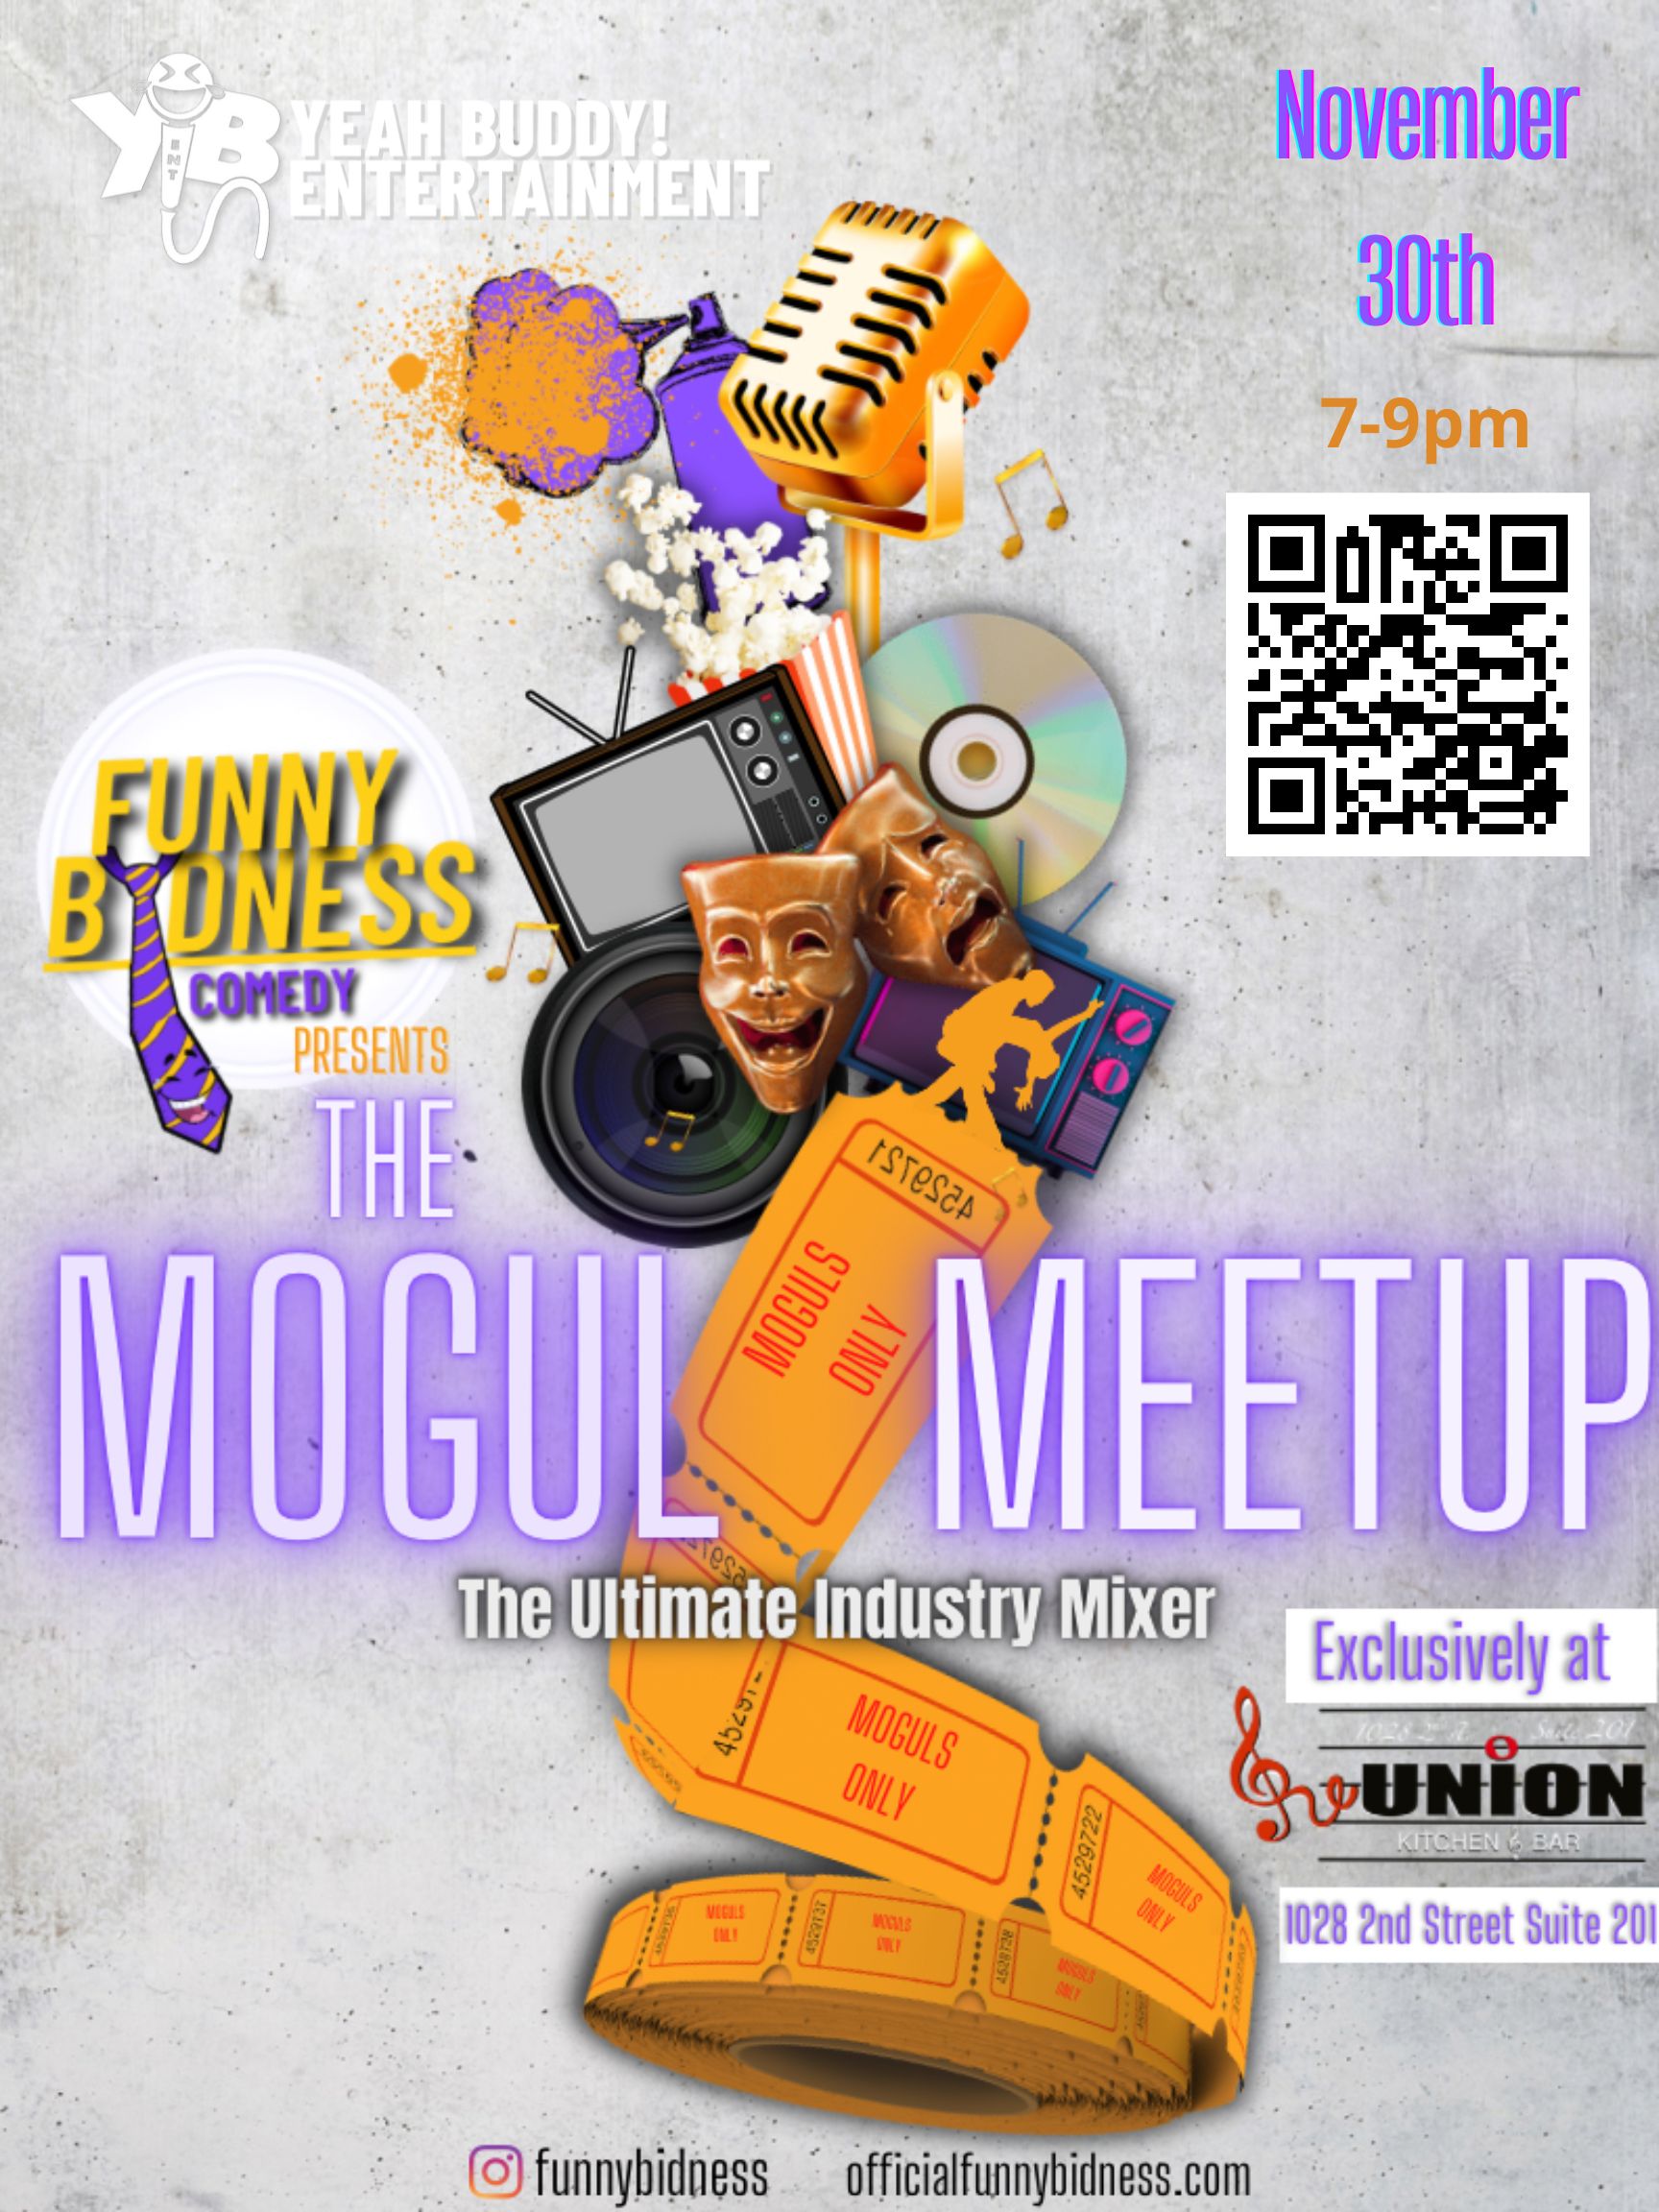 Mogul Meet Up Nov 30th